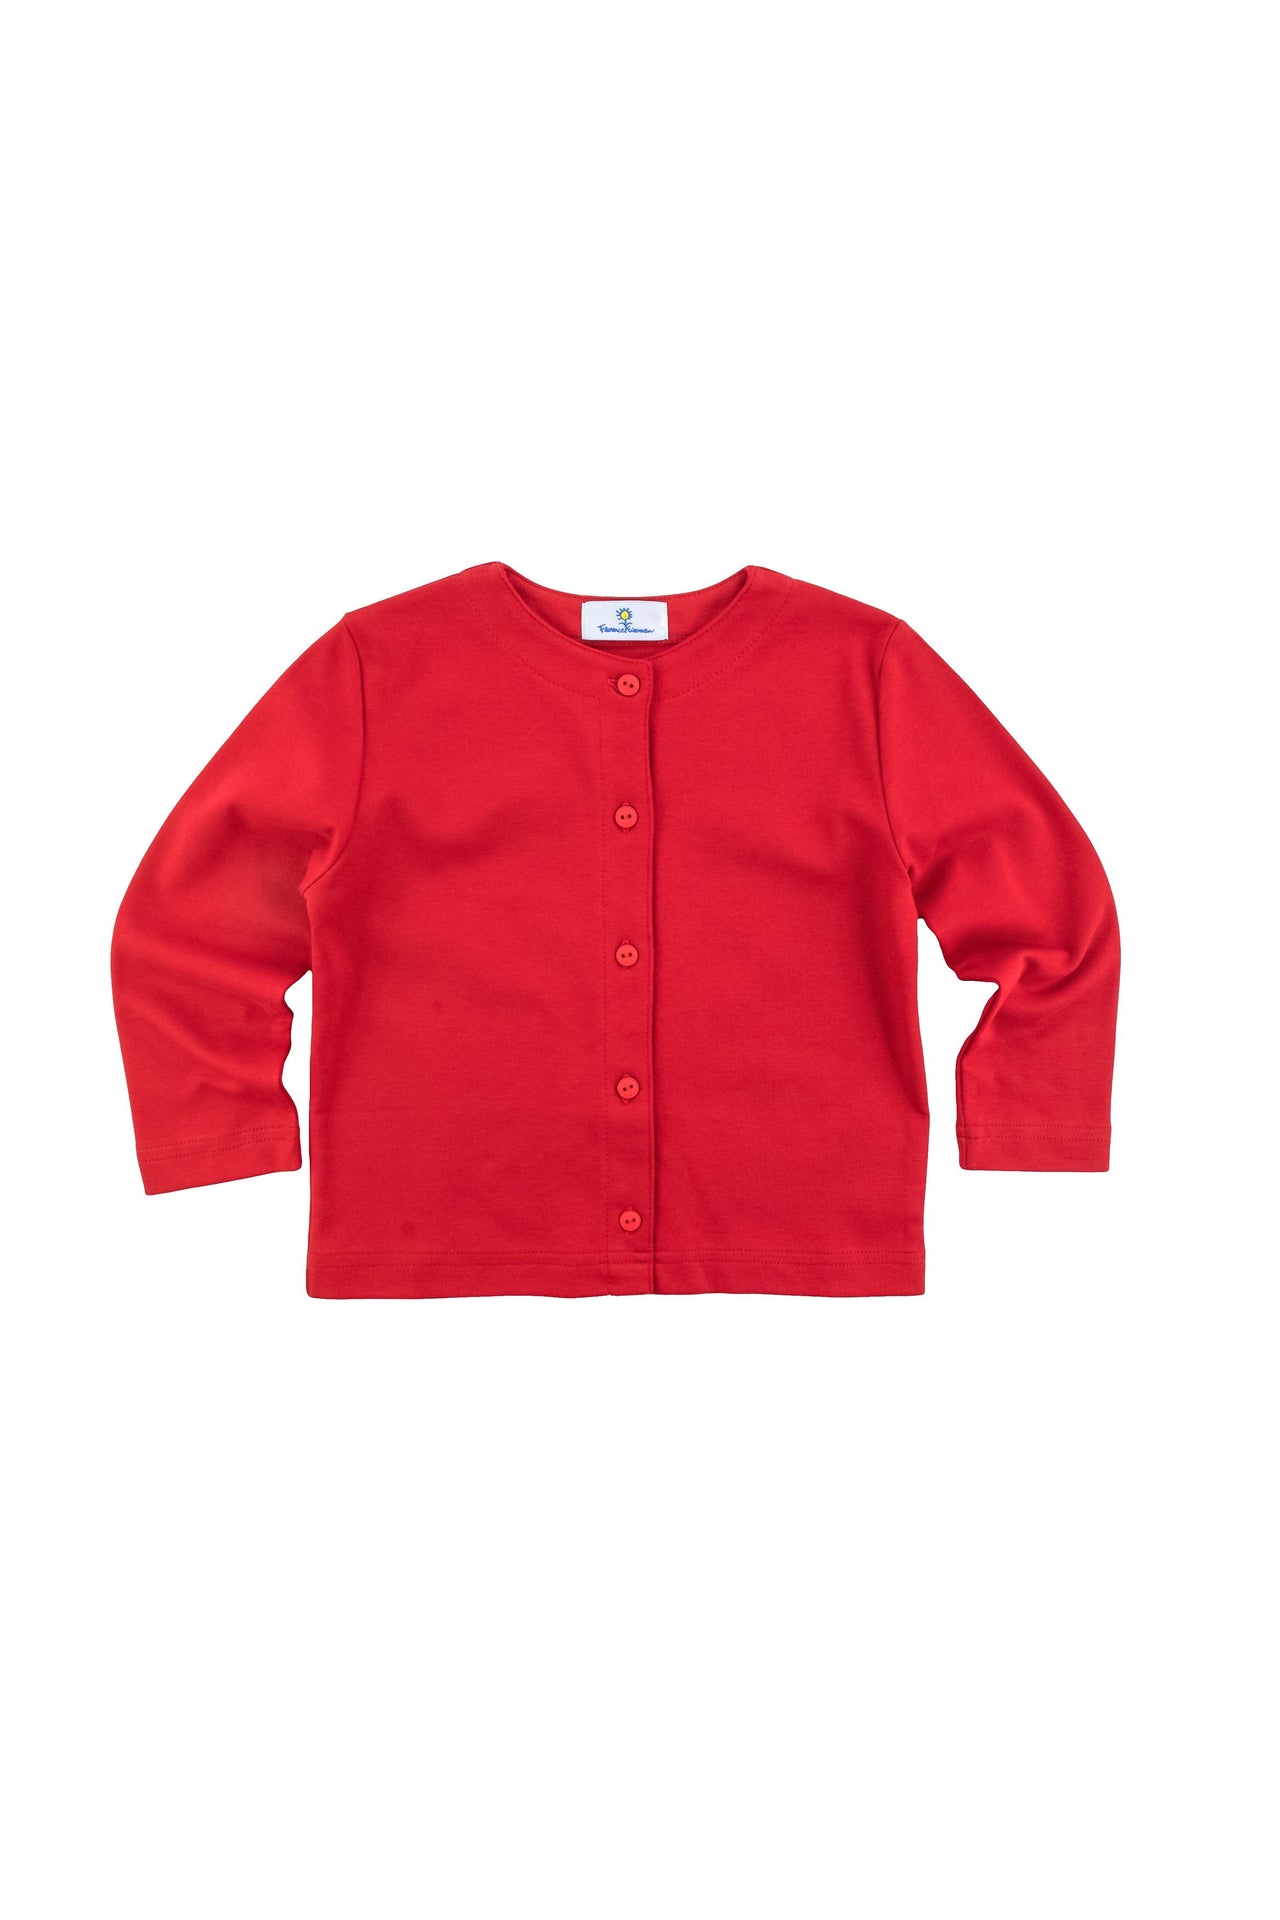 Florence Eiseman Red Knit Cardigan 5016 5006